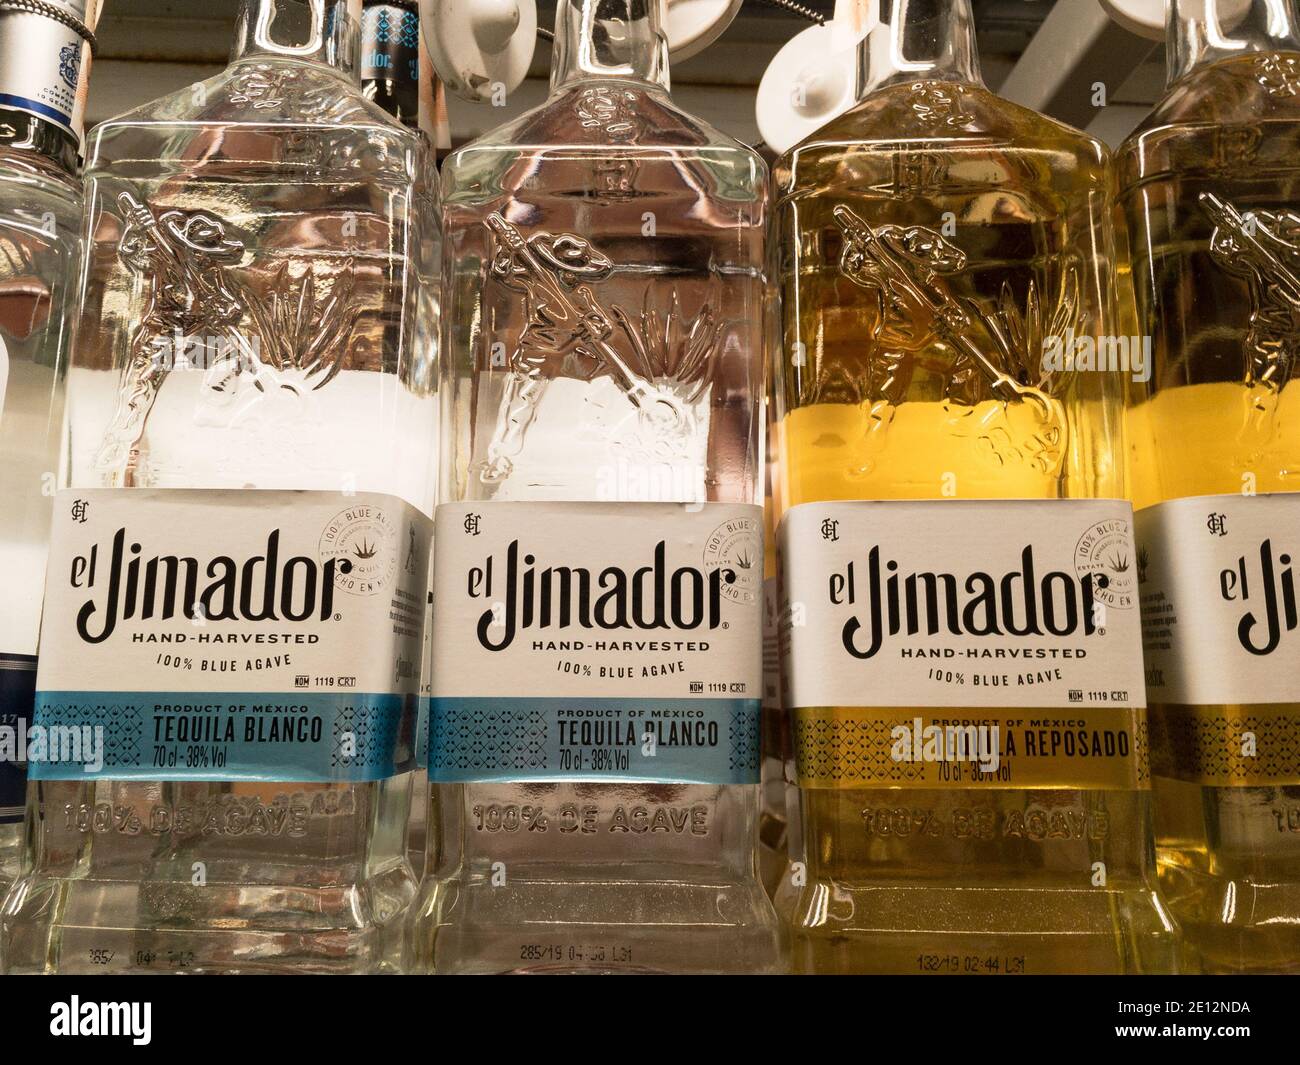 BELGRAD, SERBIEN - 20. DEZEMBER 2020: Tequila El Jimador Logo auf einer ihrer Flaschen. El Jimador ist eine mexikanische Marke von Tequila und anderen mexiko-Alkoh Stockfoto